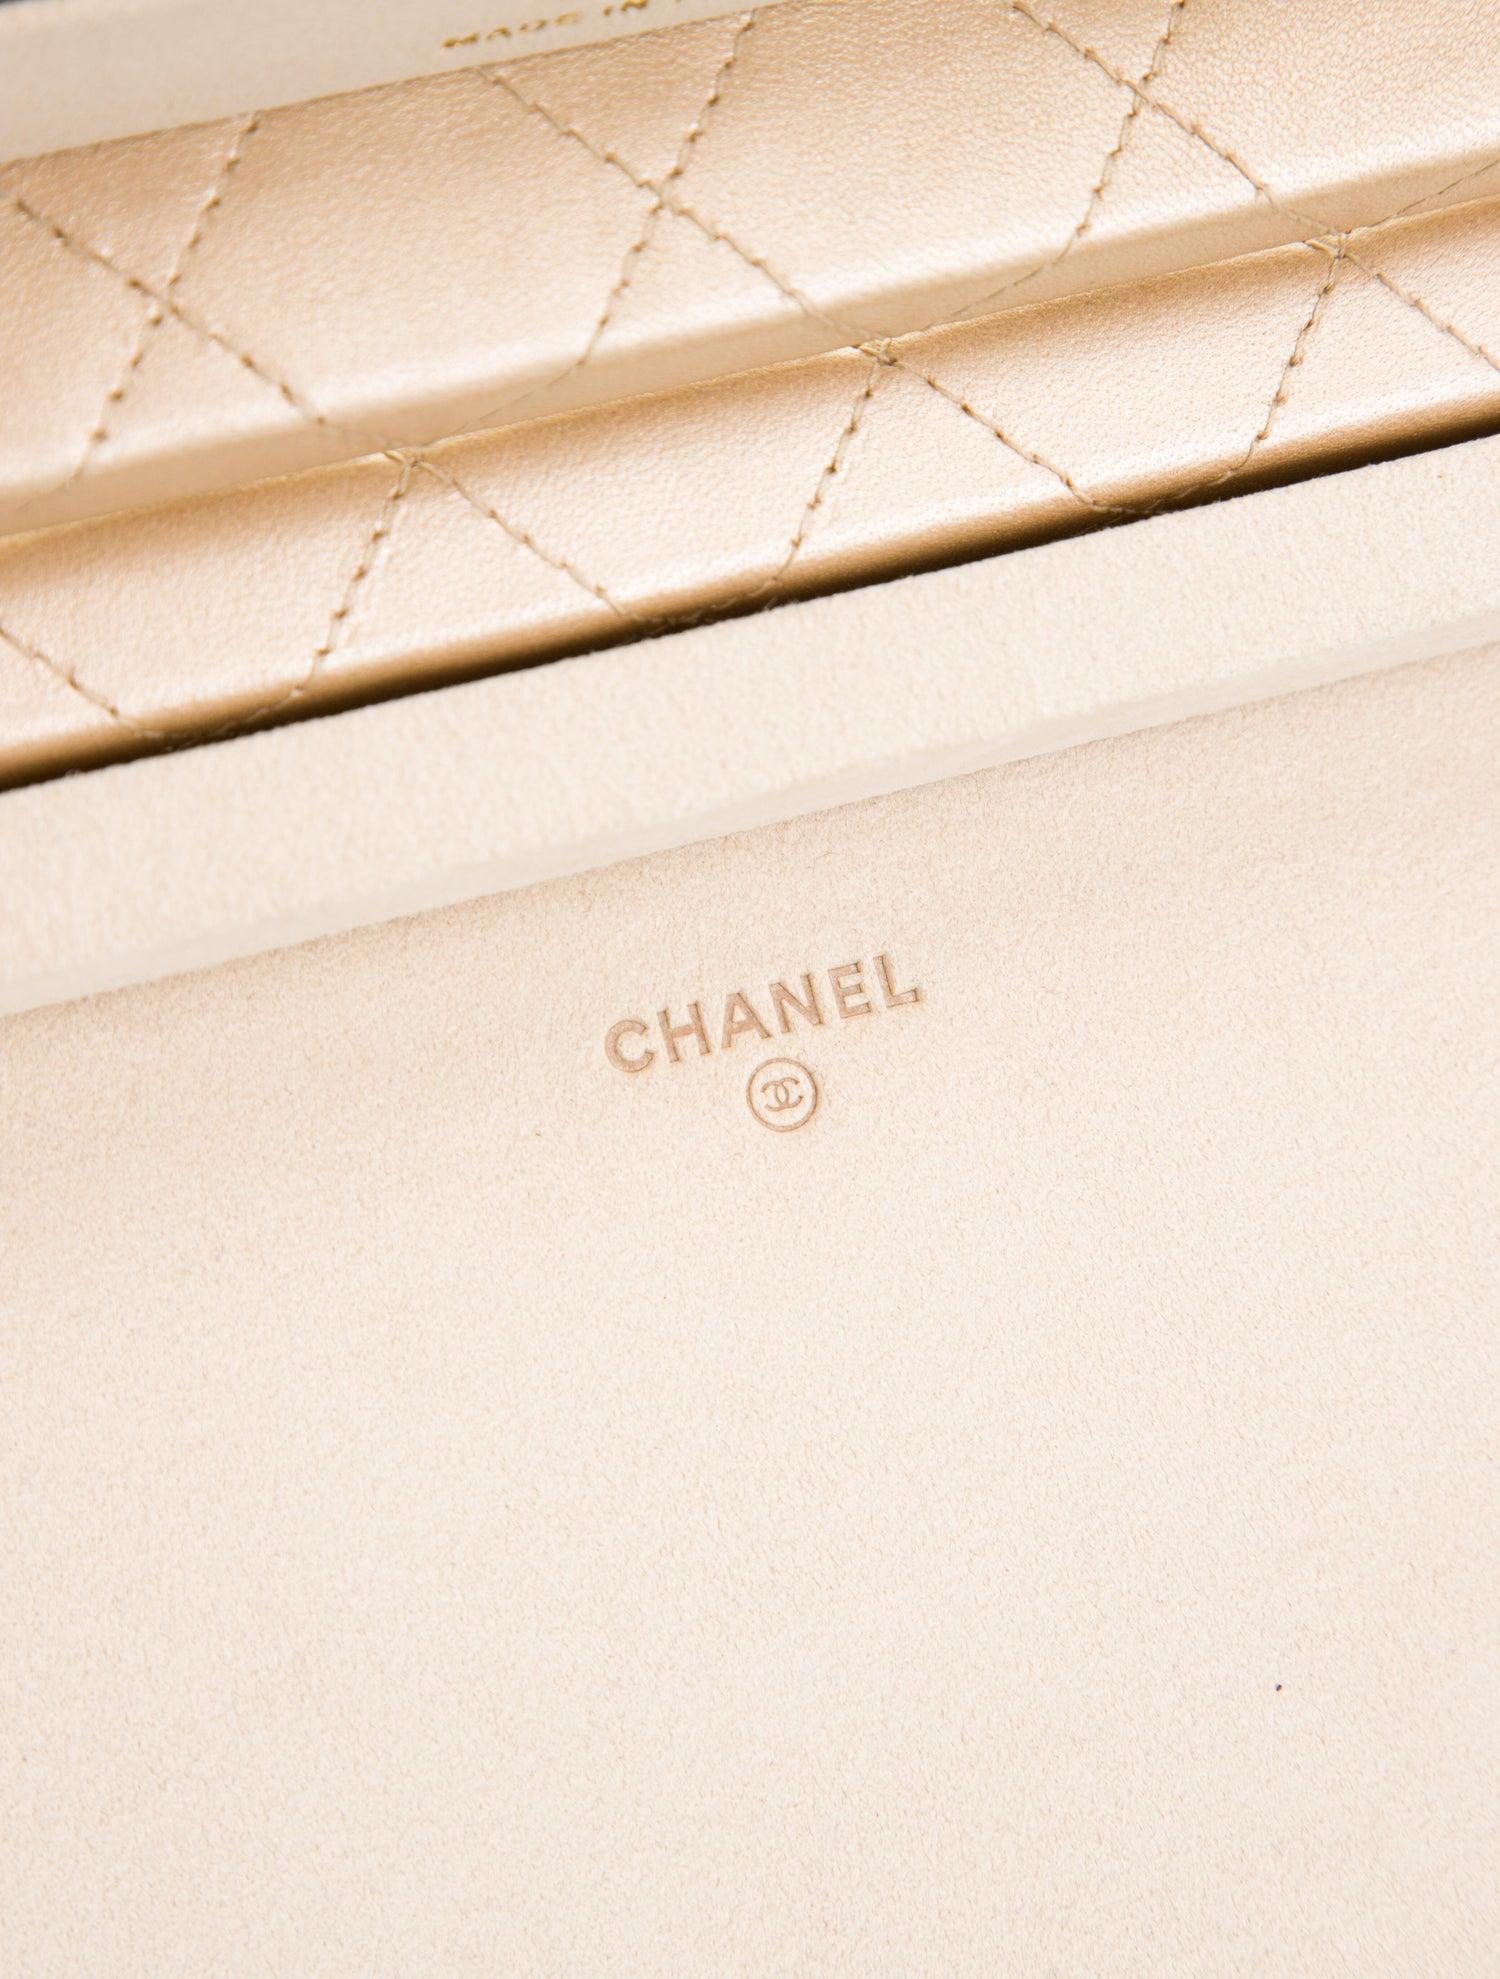 Or Chanel Édition limitée Vanity Case matelassé or Rare Home Decor Jewelry Case en vente